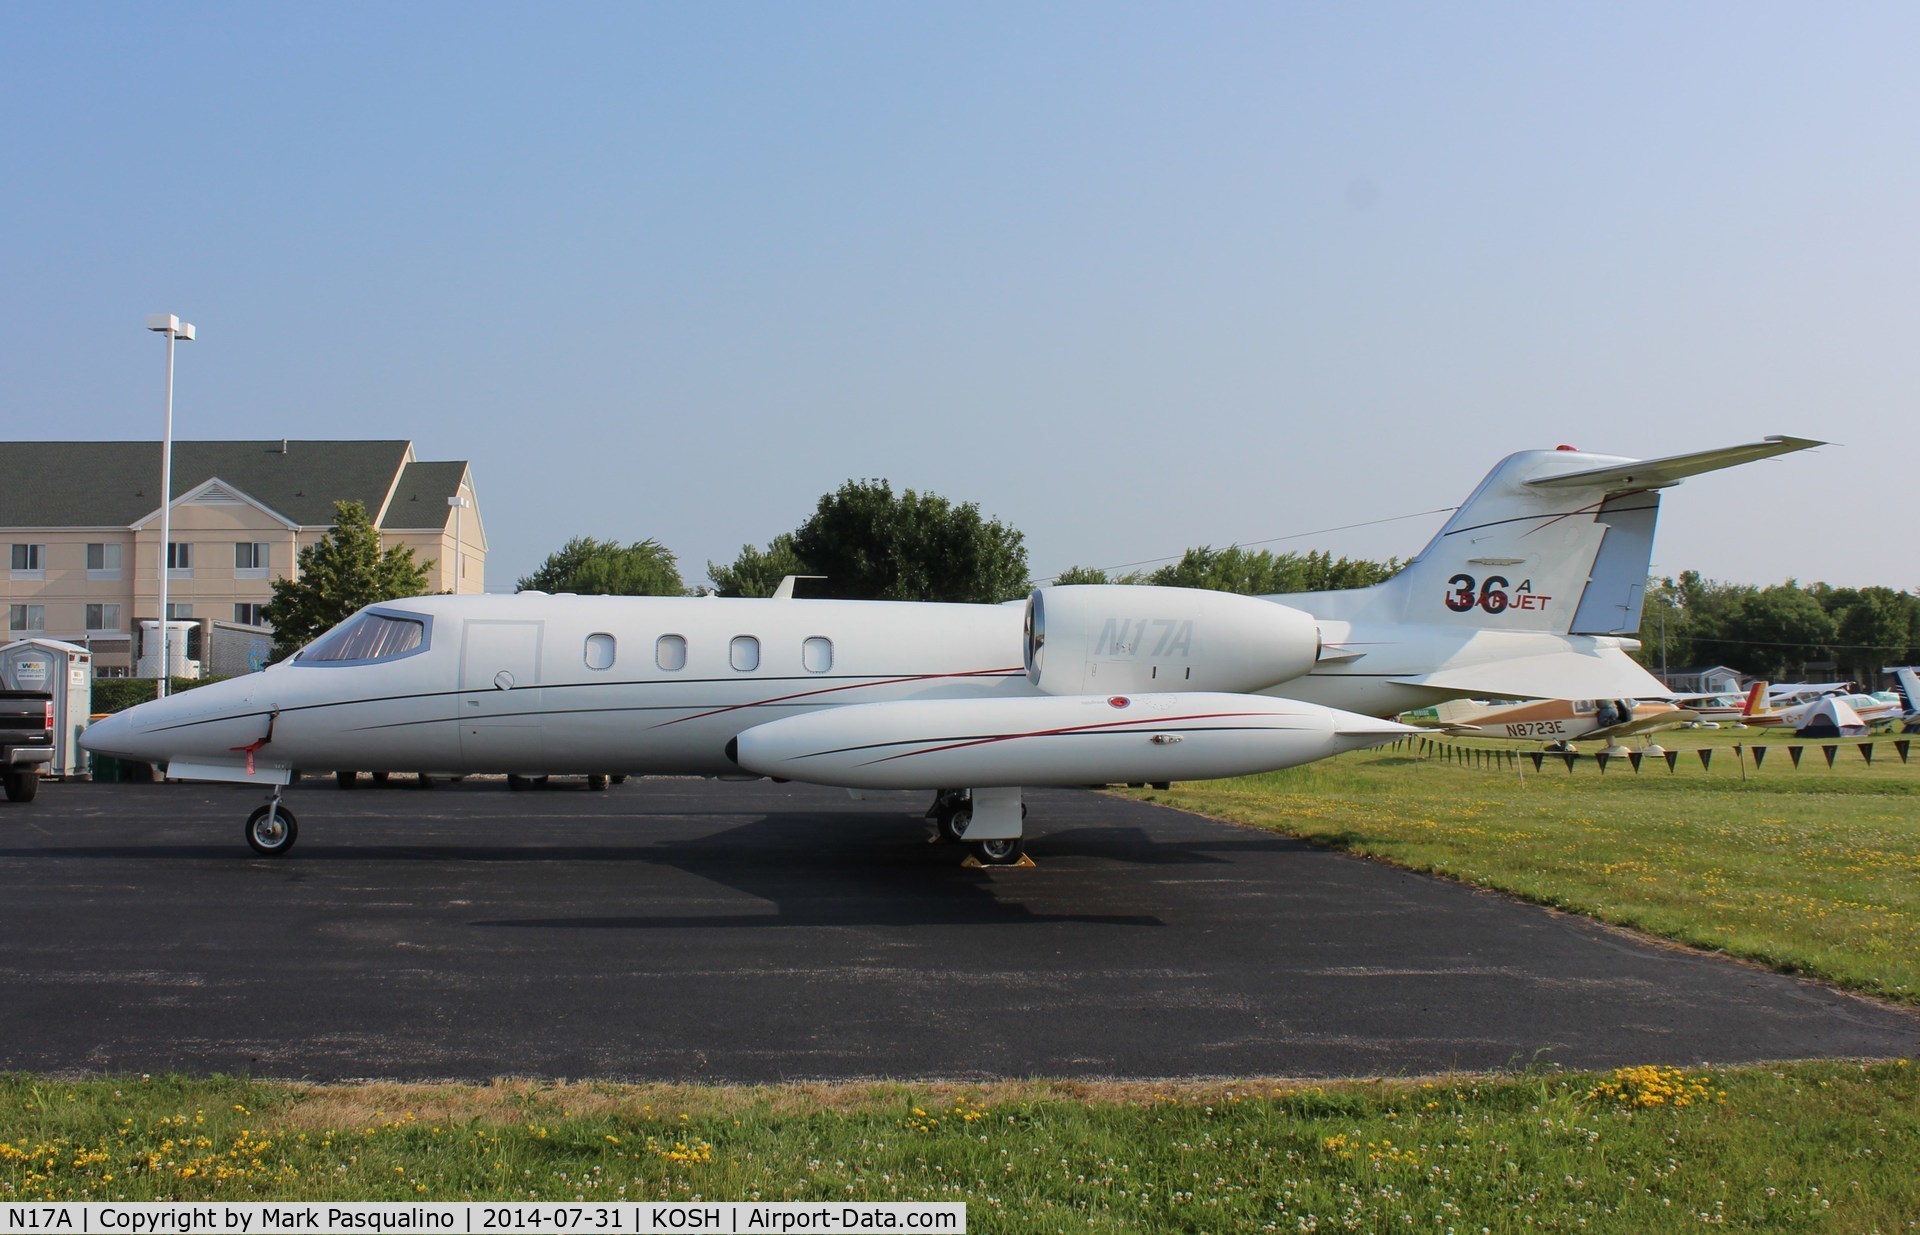 N17A, 1980 Learjet 36A C/N 36-046, Lear Jet 36A